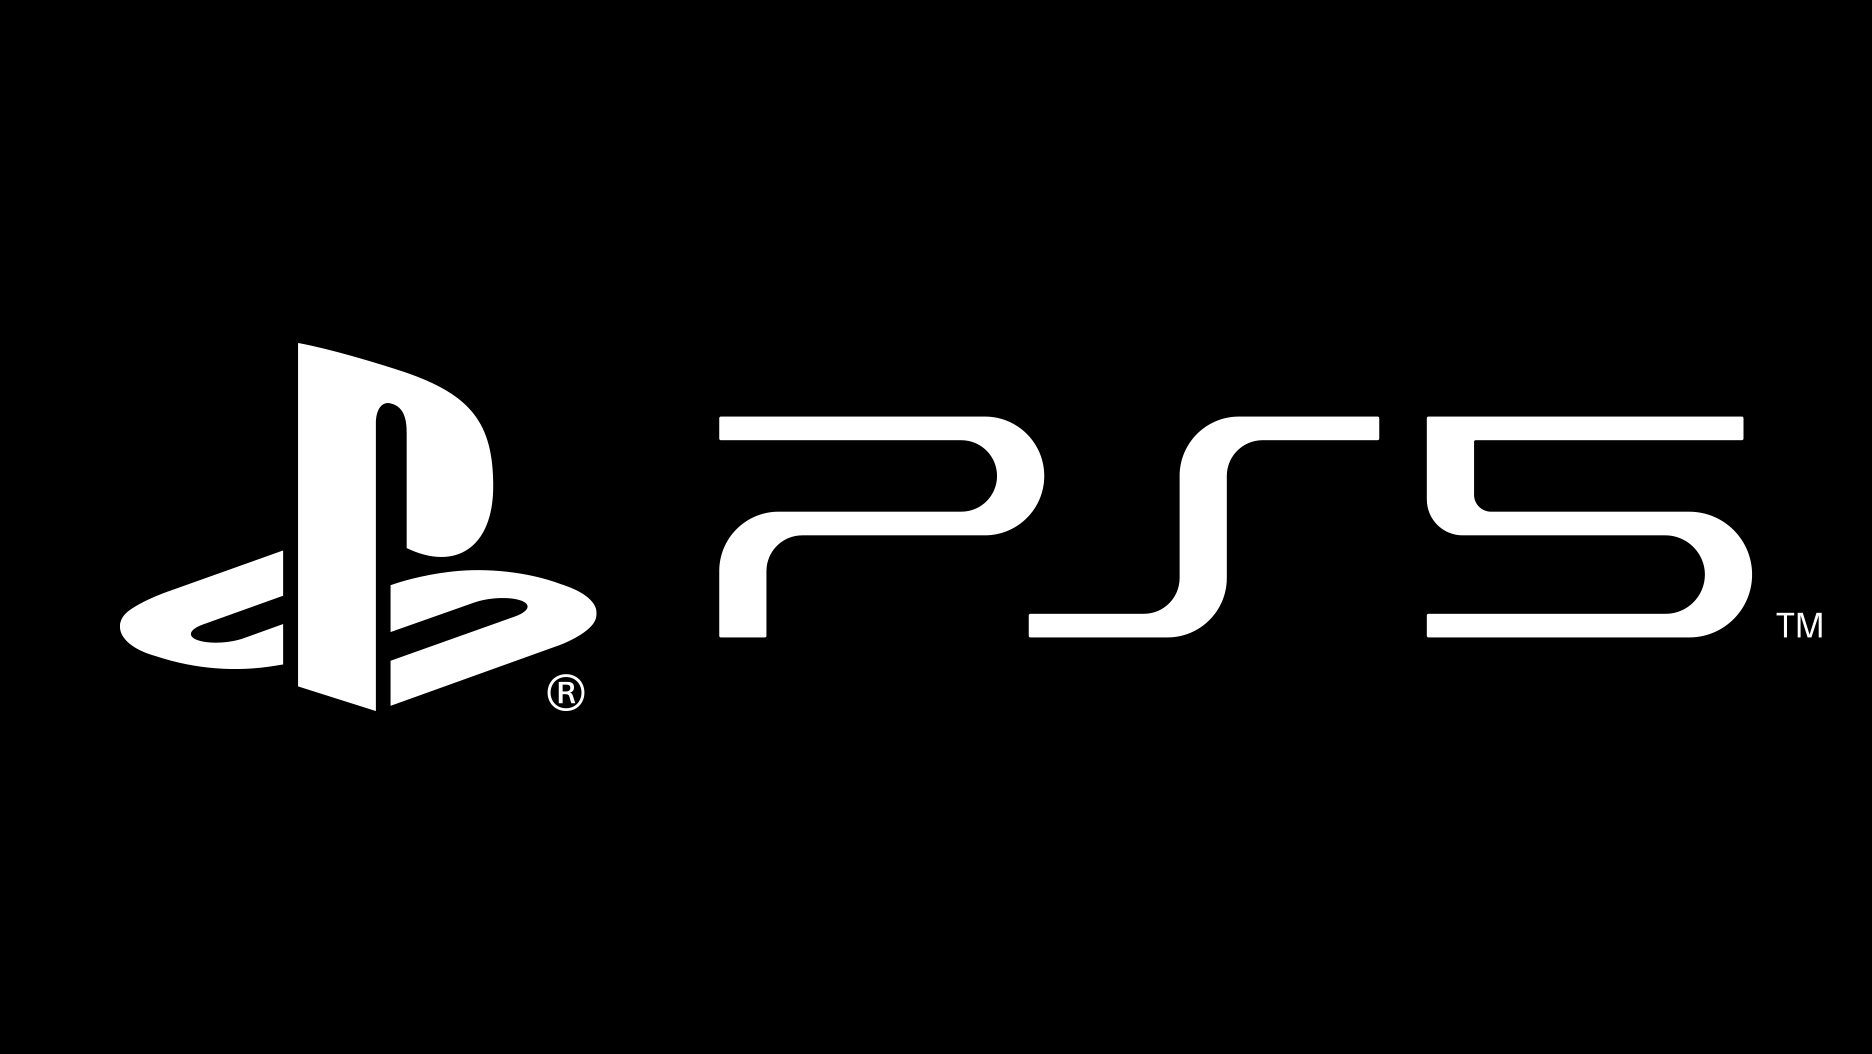 PlayStation for å være vert for bloggen, muligens avduking av den nye PS5